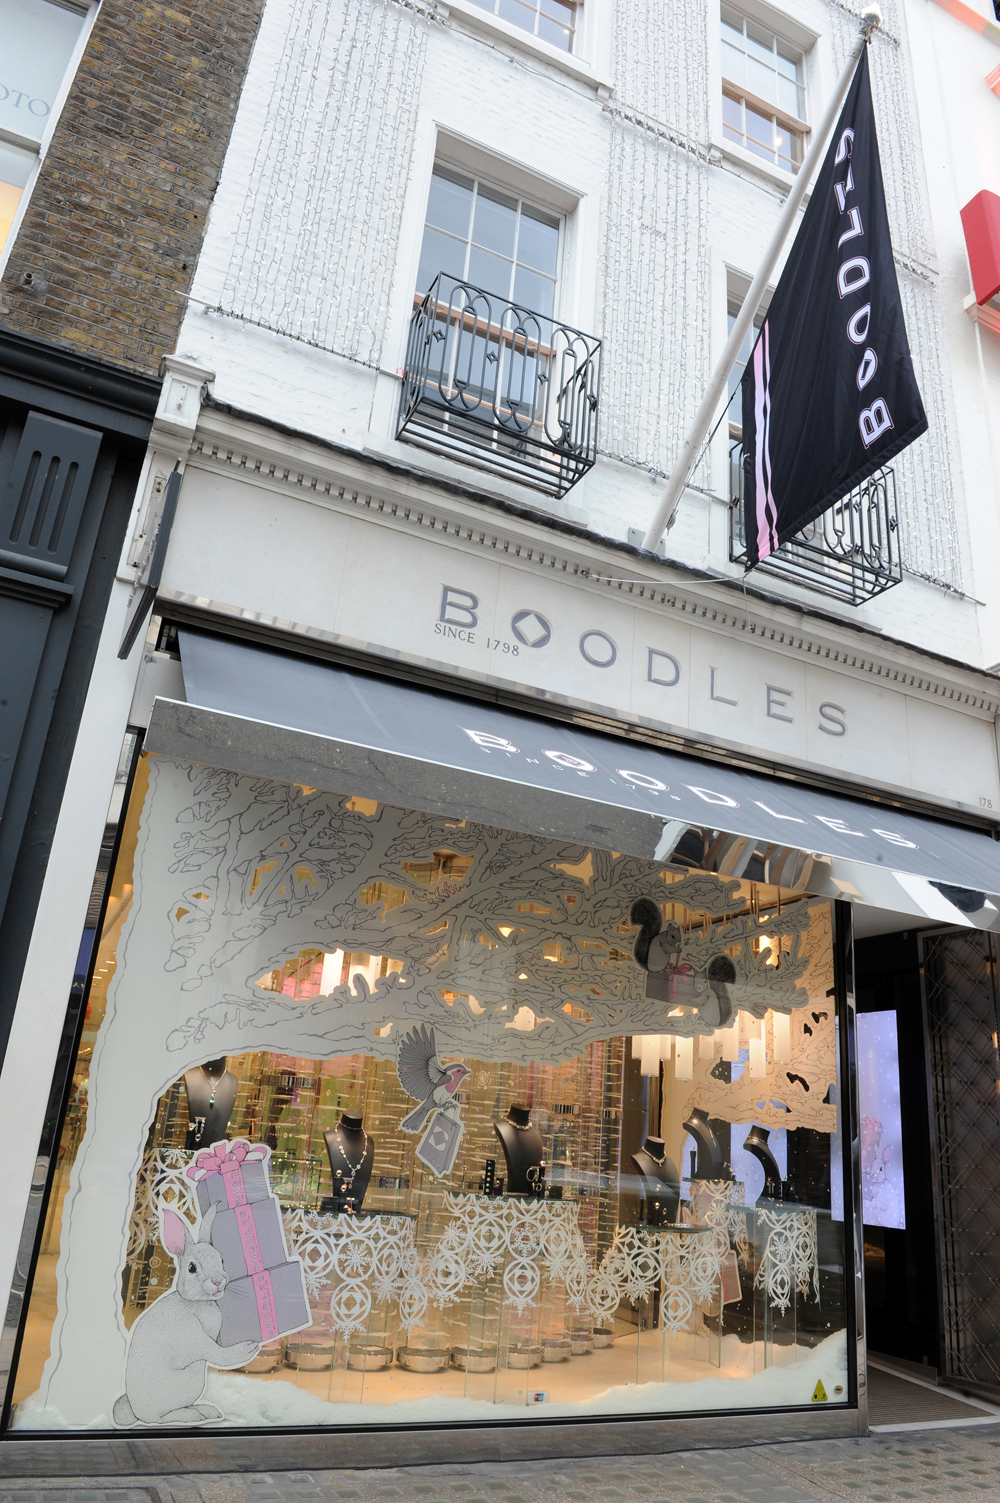 Boodles Jewellers, Sloane Street, London